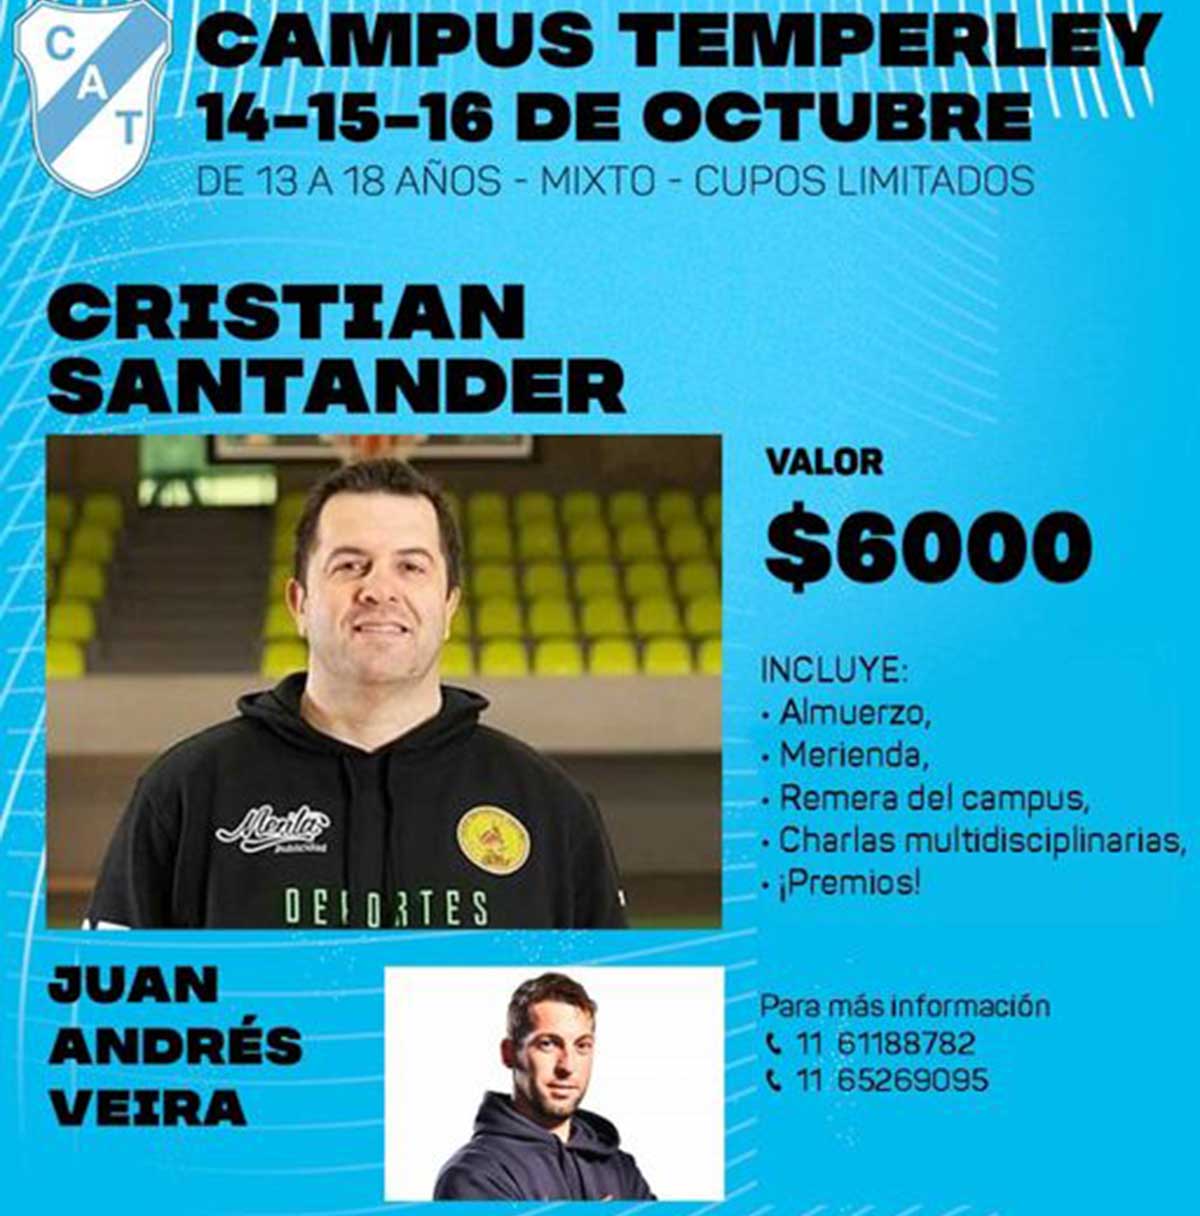 Cristian Santander y Juan Andrés Veira campus temperley